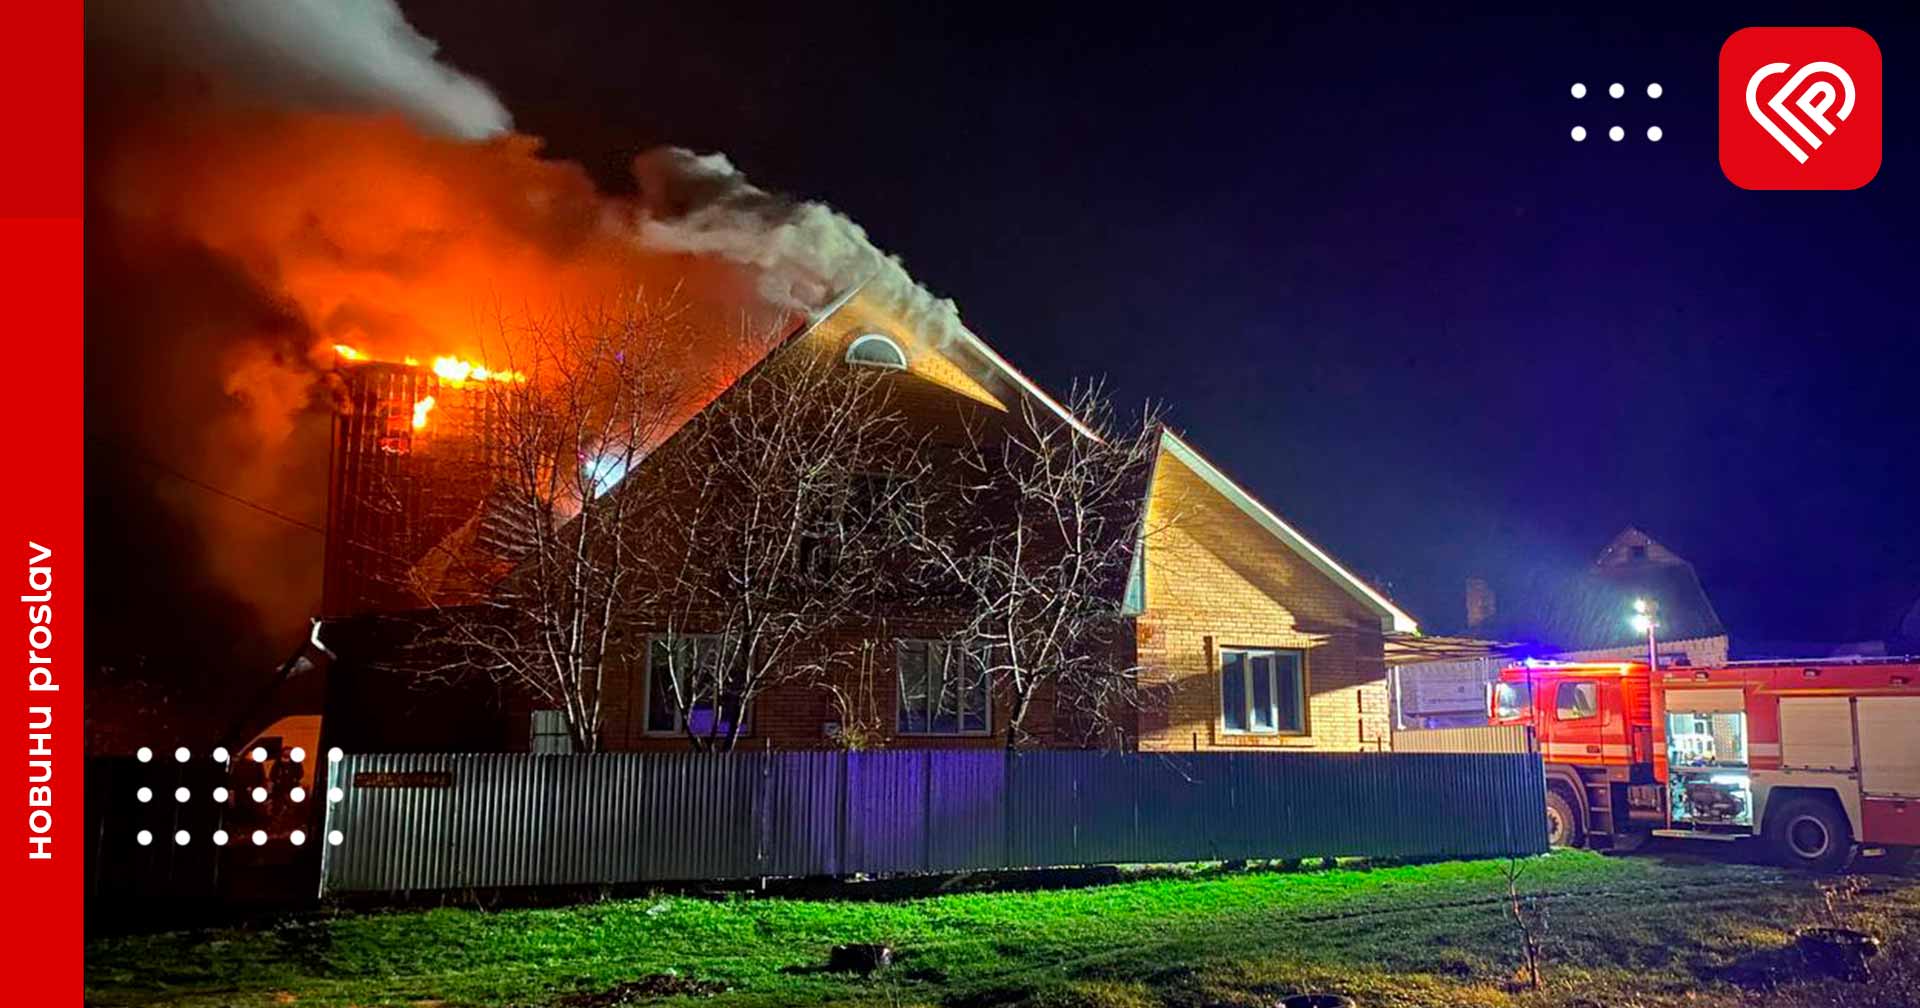 Через гараж загорівся будинок: деталі пожежі в Переяславі (фото та відео)